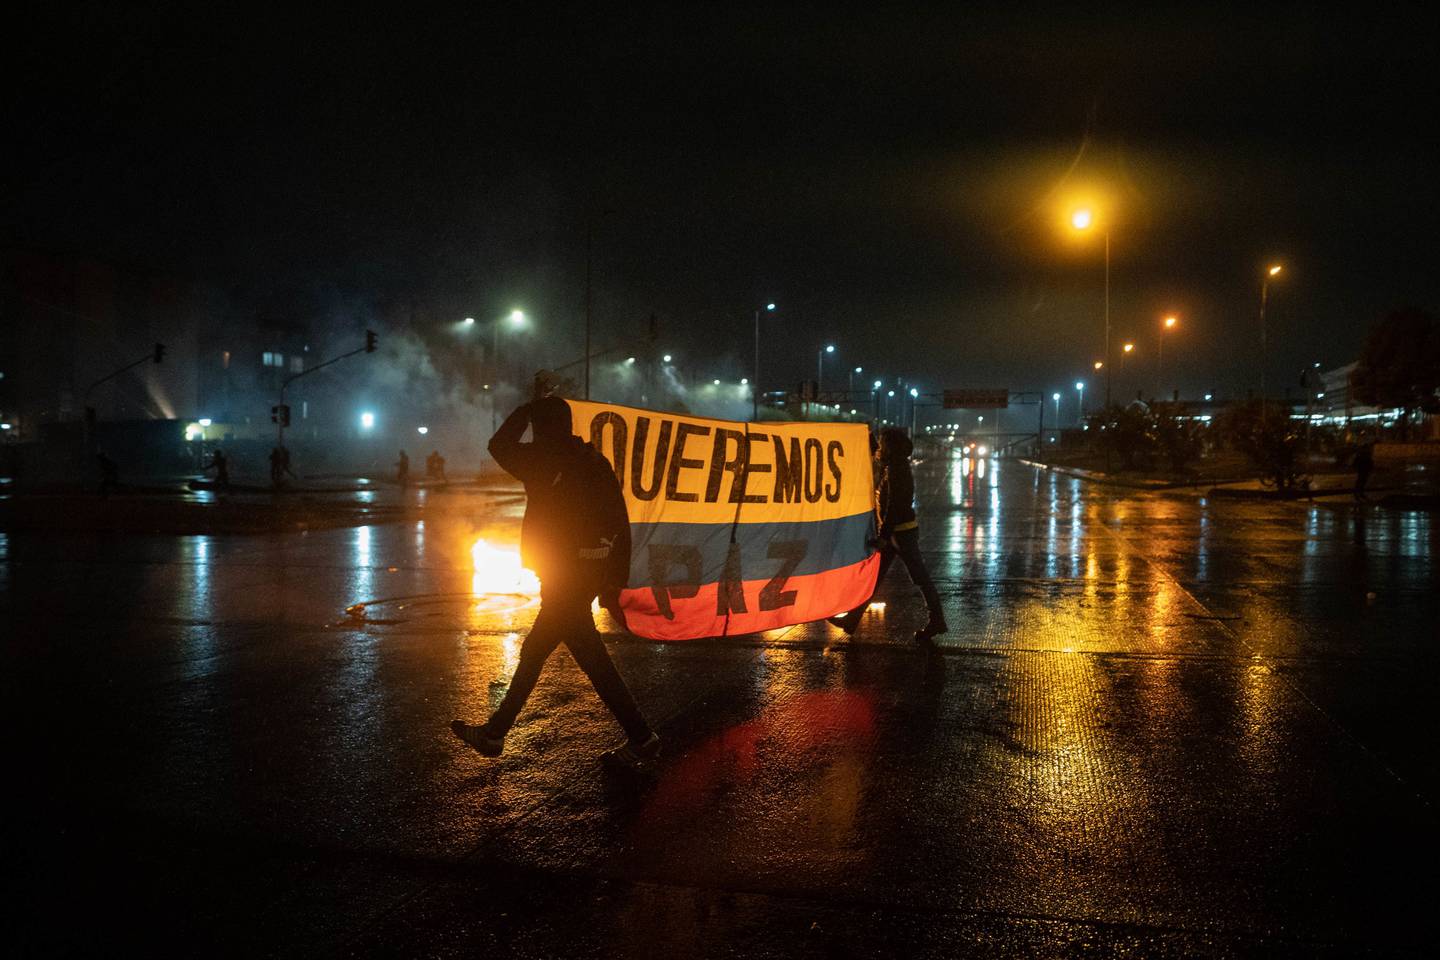 Los manifestantes sostienen una bandera colombiana que dice "queremos la paz" durante una protesta en Bogotá, Colombia, el viernes 28 de mayo de 2021.dfd